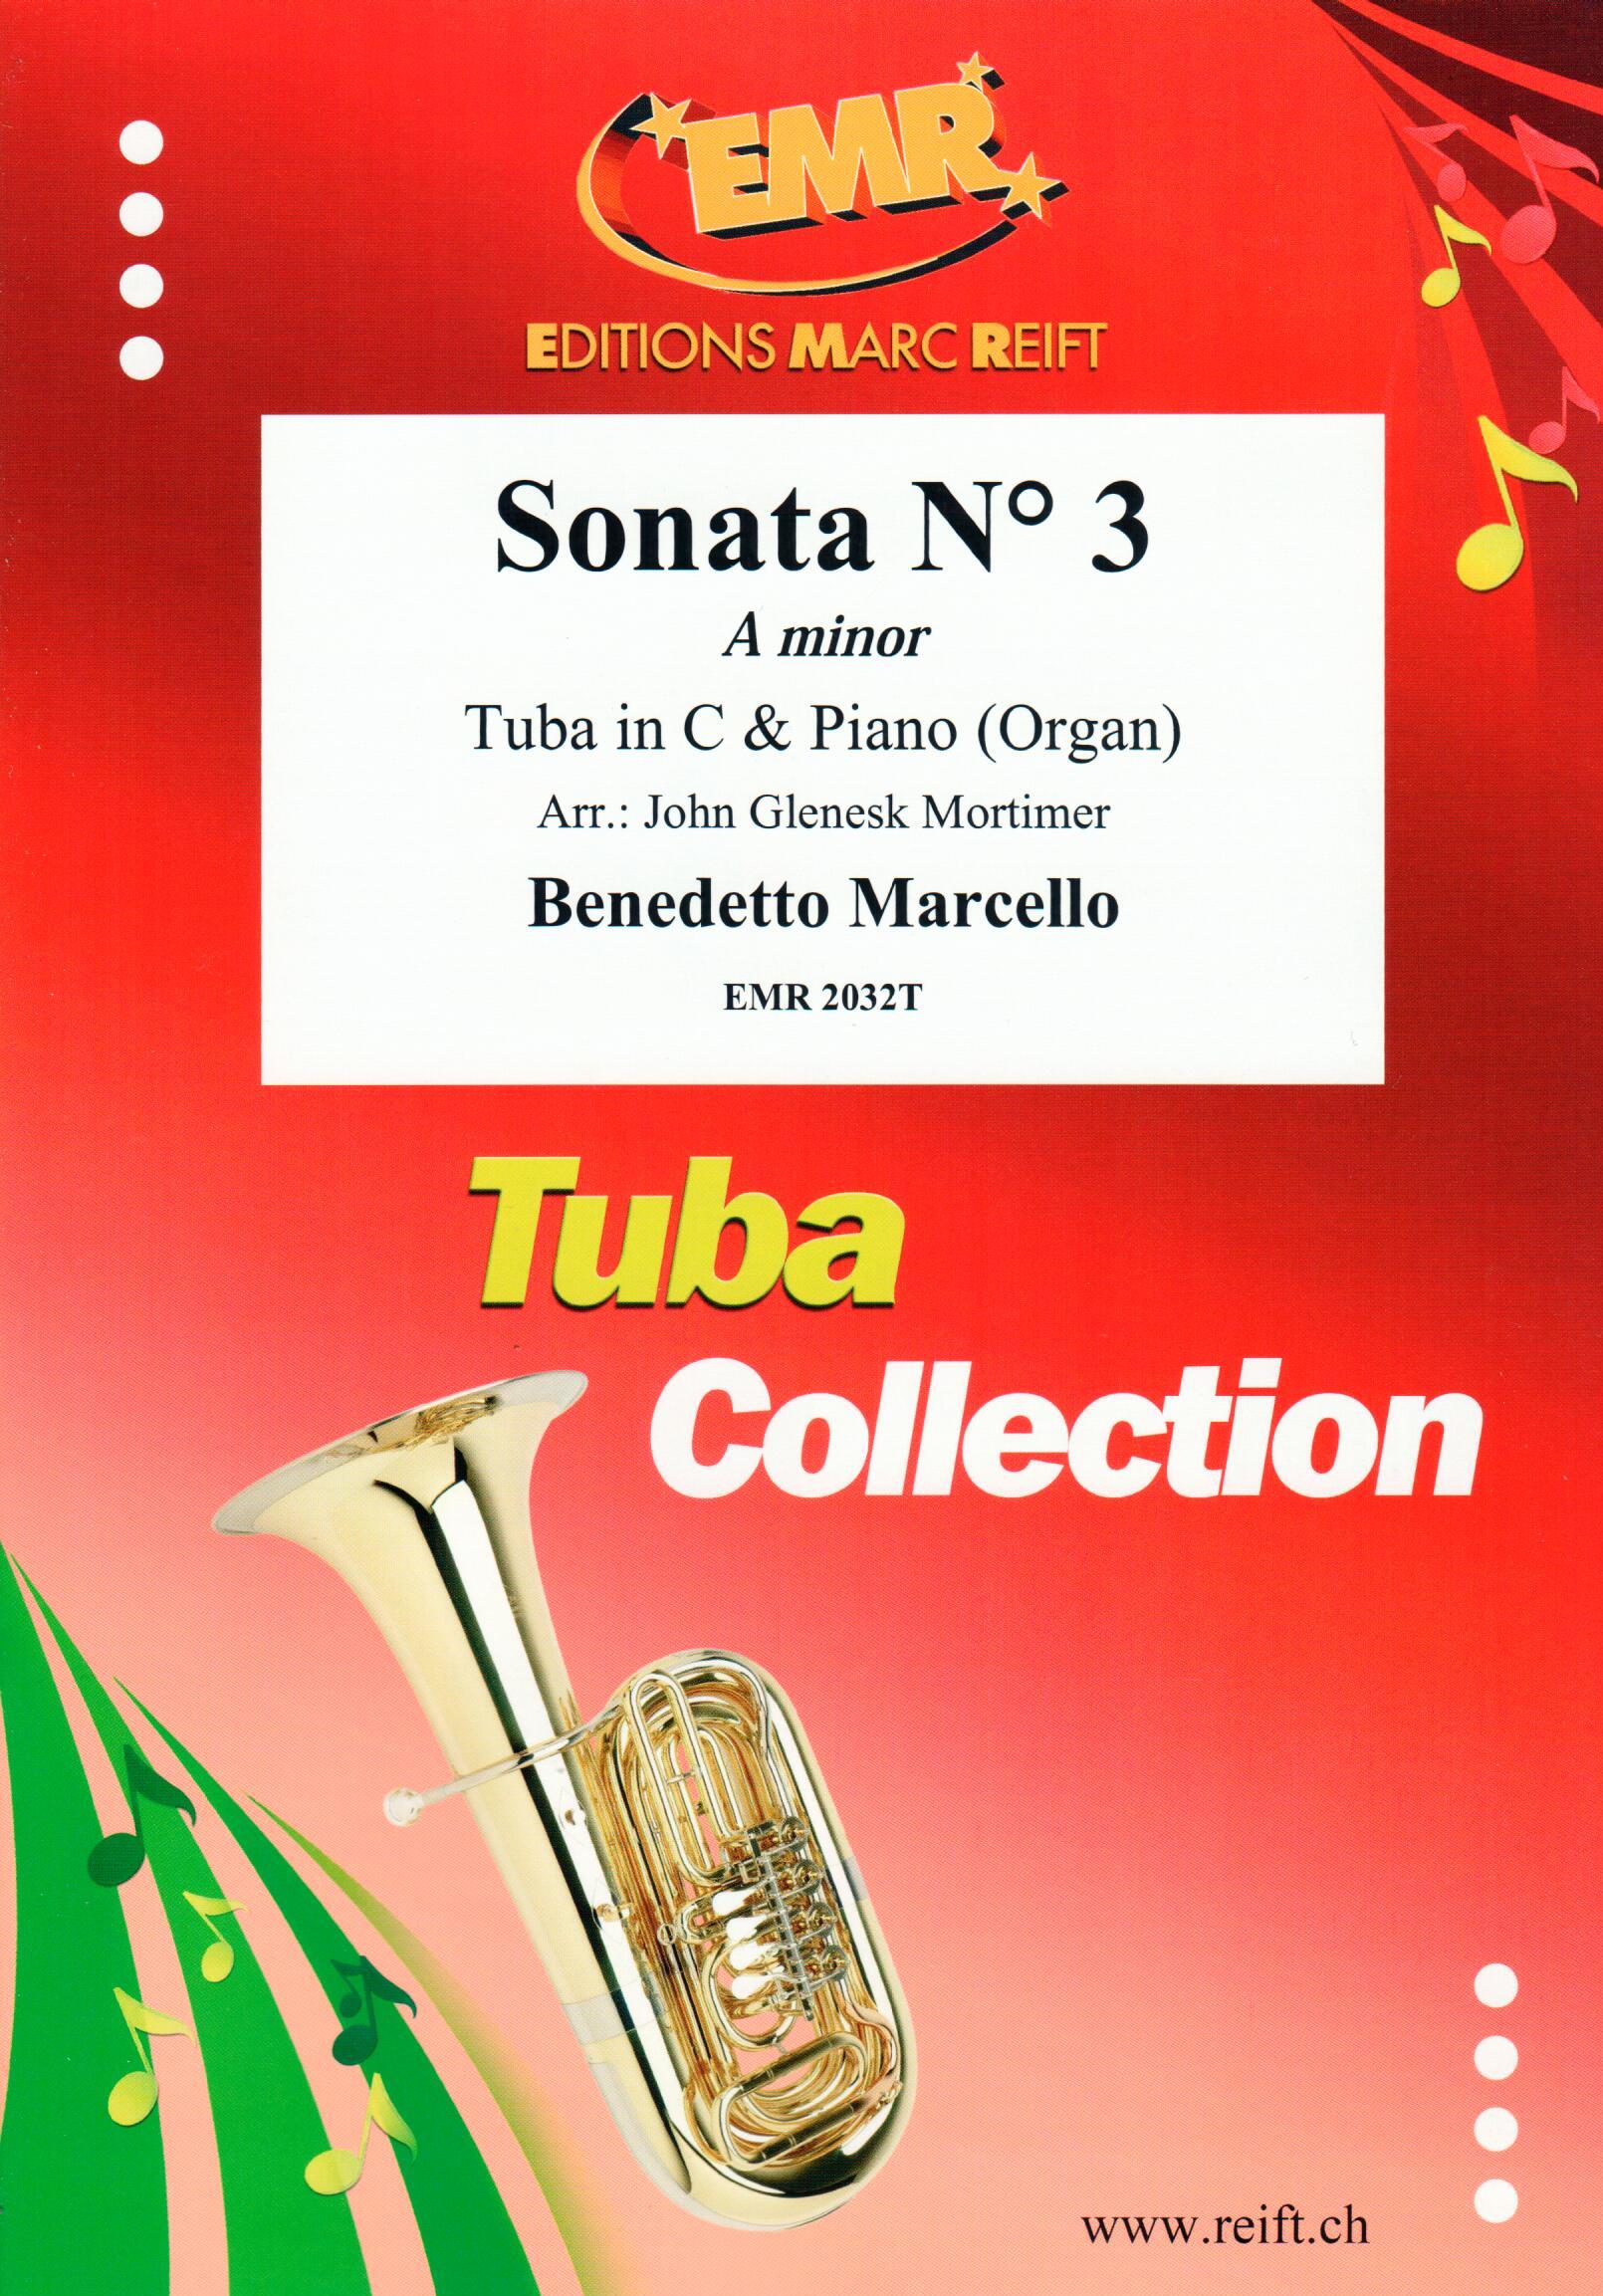 SONATA N° 3 IN A MINOR, SOLOS - E♭. Bass